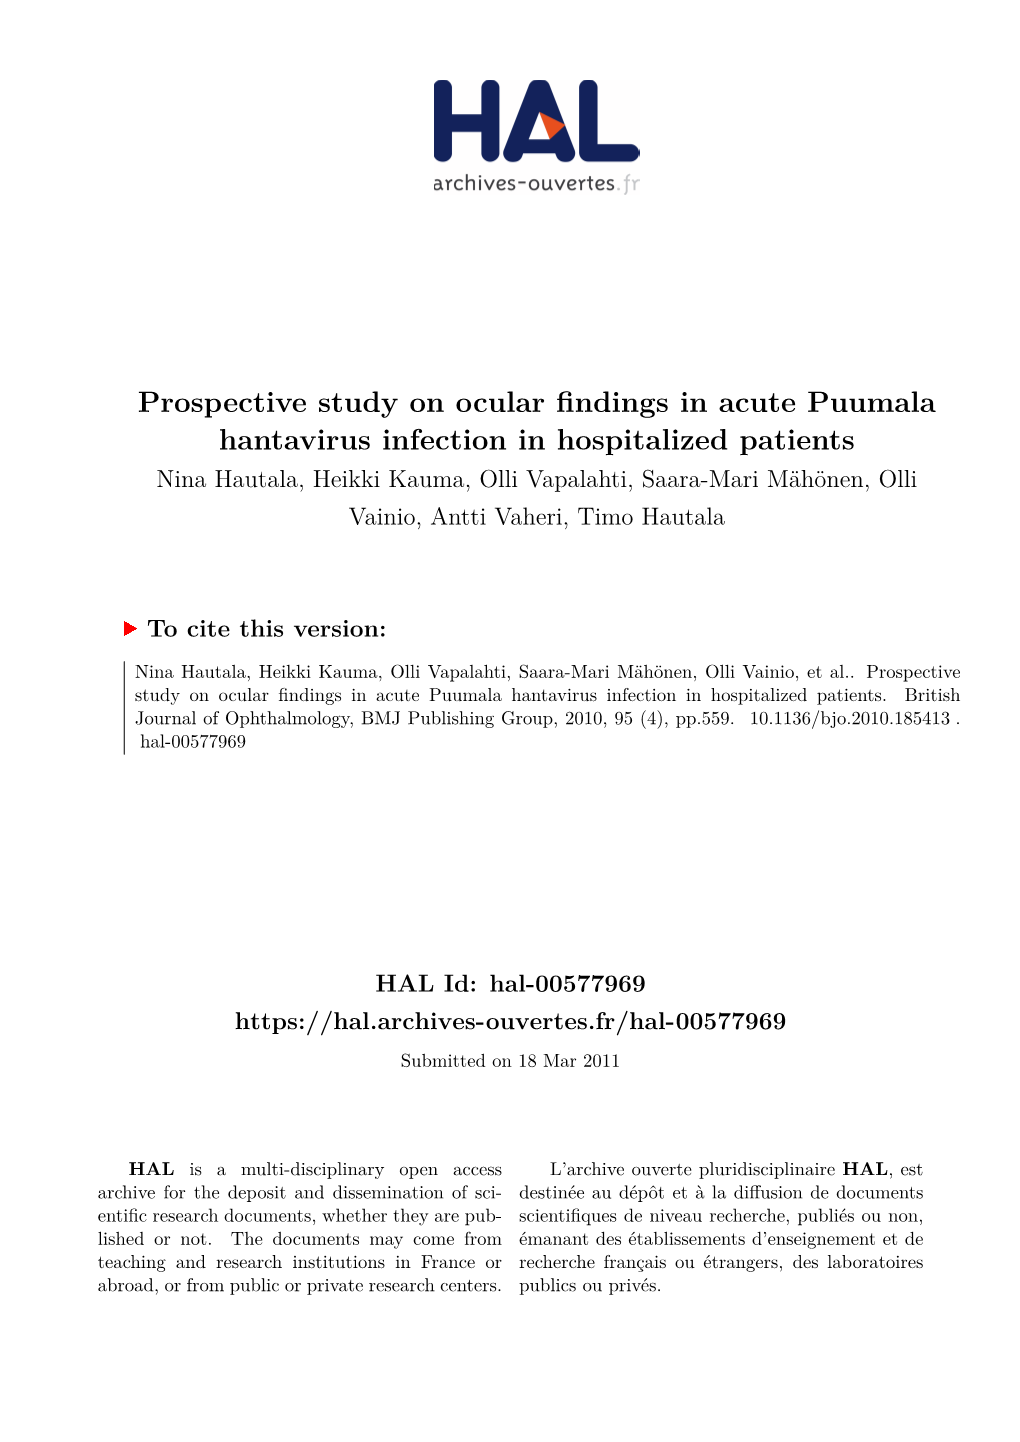 Prospective Study on Ocular Findings in Acute Puumala Hantavirus